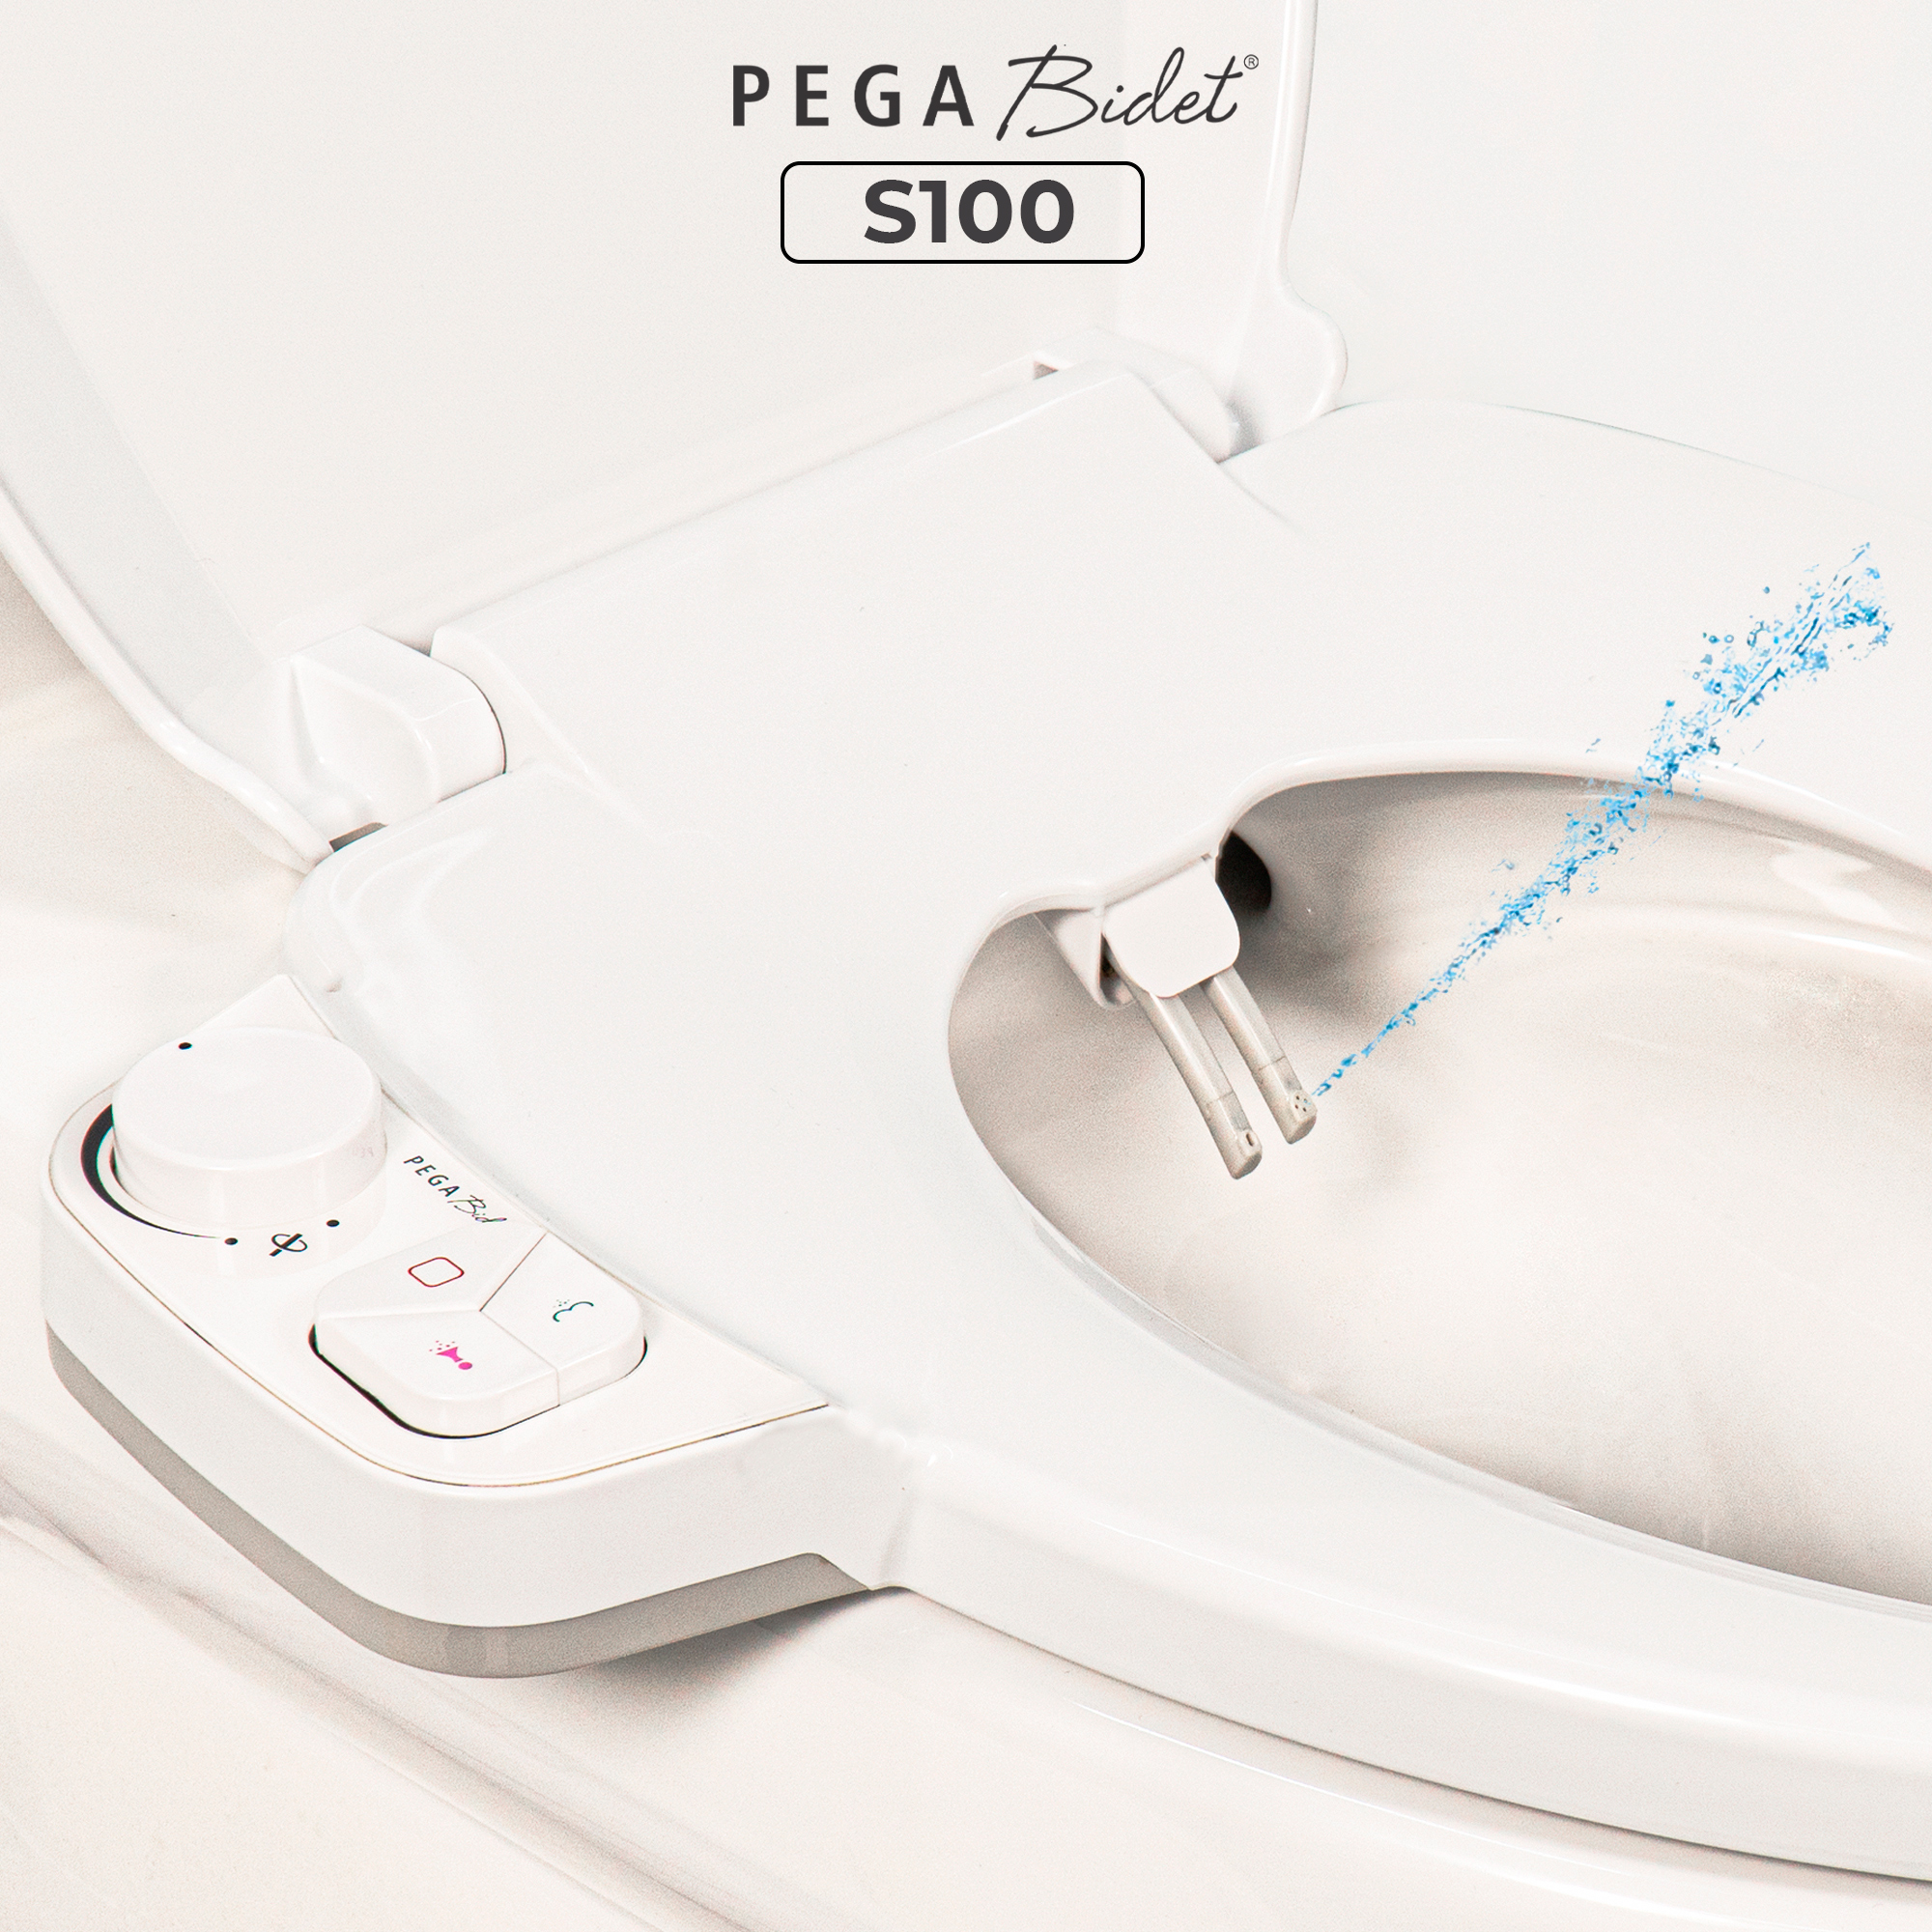 Nắp bồn cầu thông minh PEGA Bidet S100, 2 vòi rửa cho nam và vệ sinh cho phụ nữ, không dùng điện, hoạt động bằng áp lực nước - Thương Hiệu Mỹ